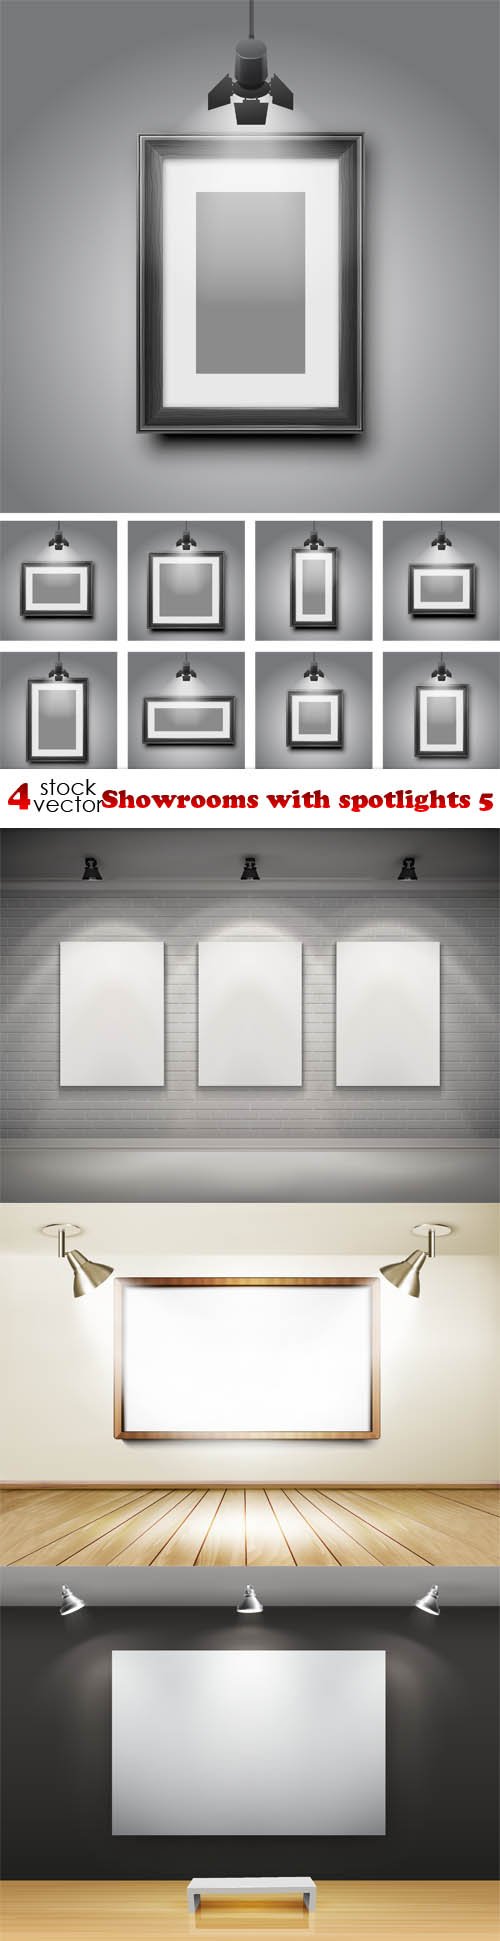 Vectors - Showrooms with spotlights 5